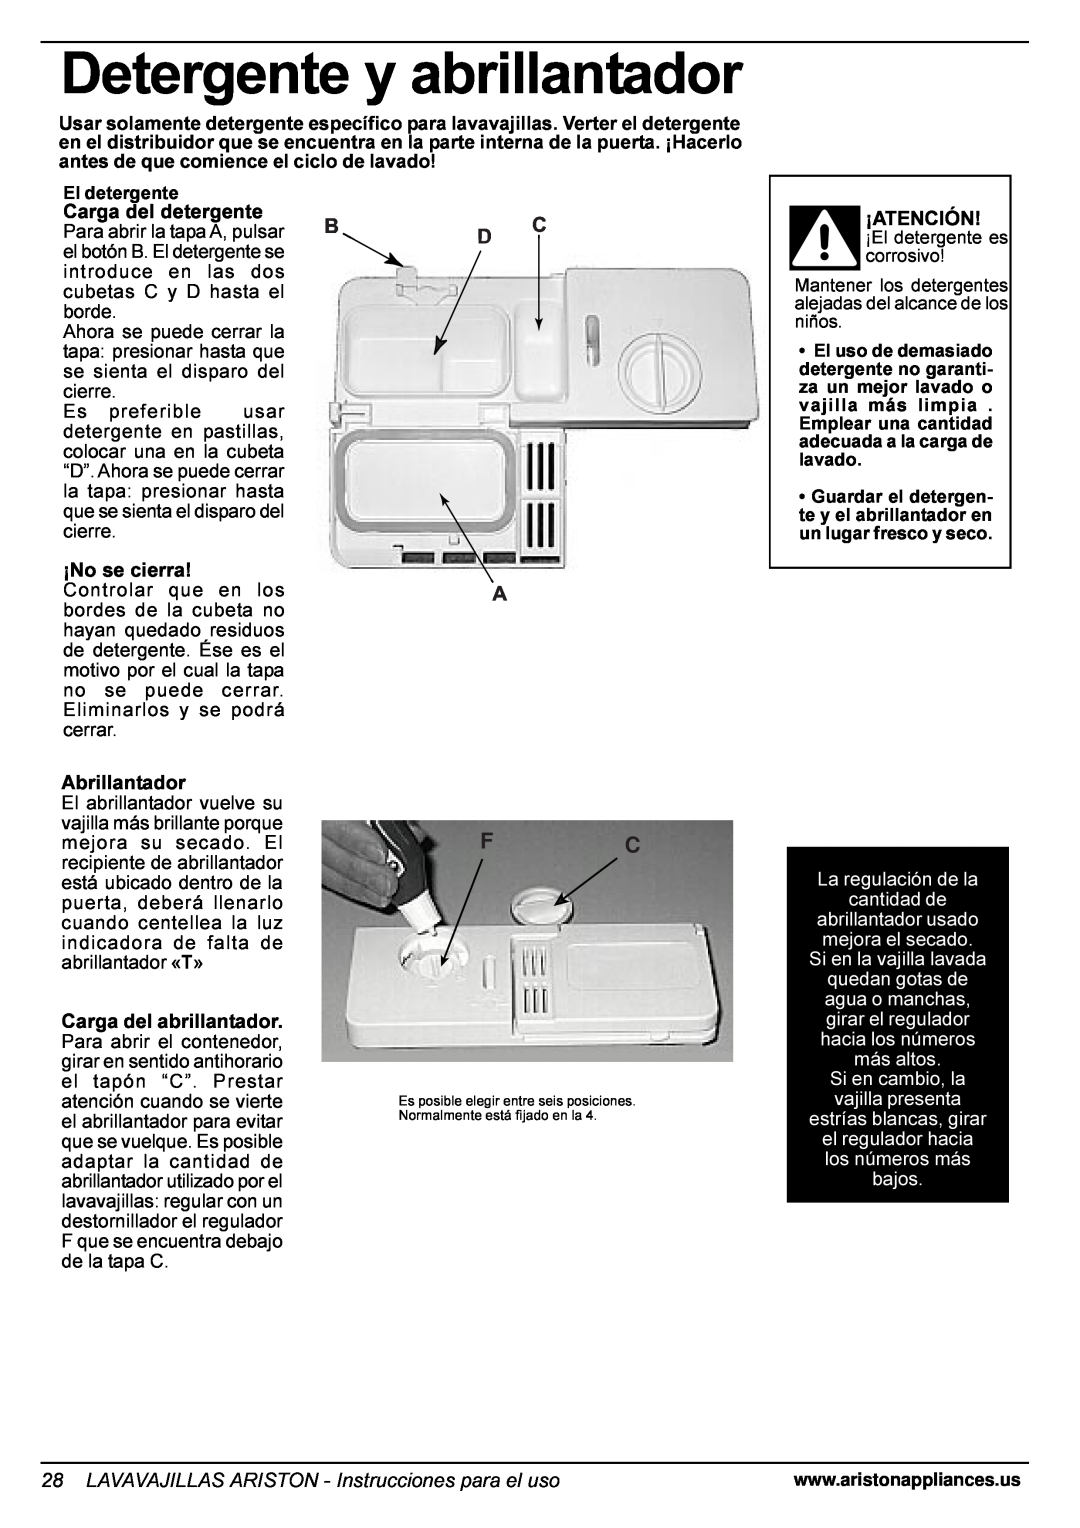 Ariston LI 670 B-S-W manual Detergente y abrillantador, Carga del detergente, ¡No se cierra, ¡Atención, Abrillantador 